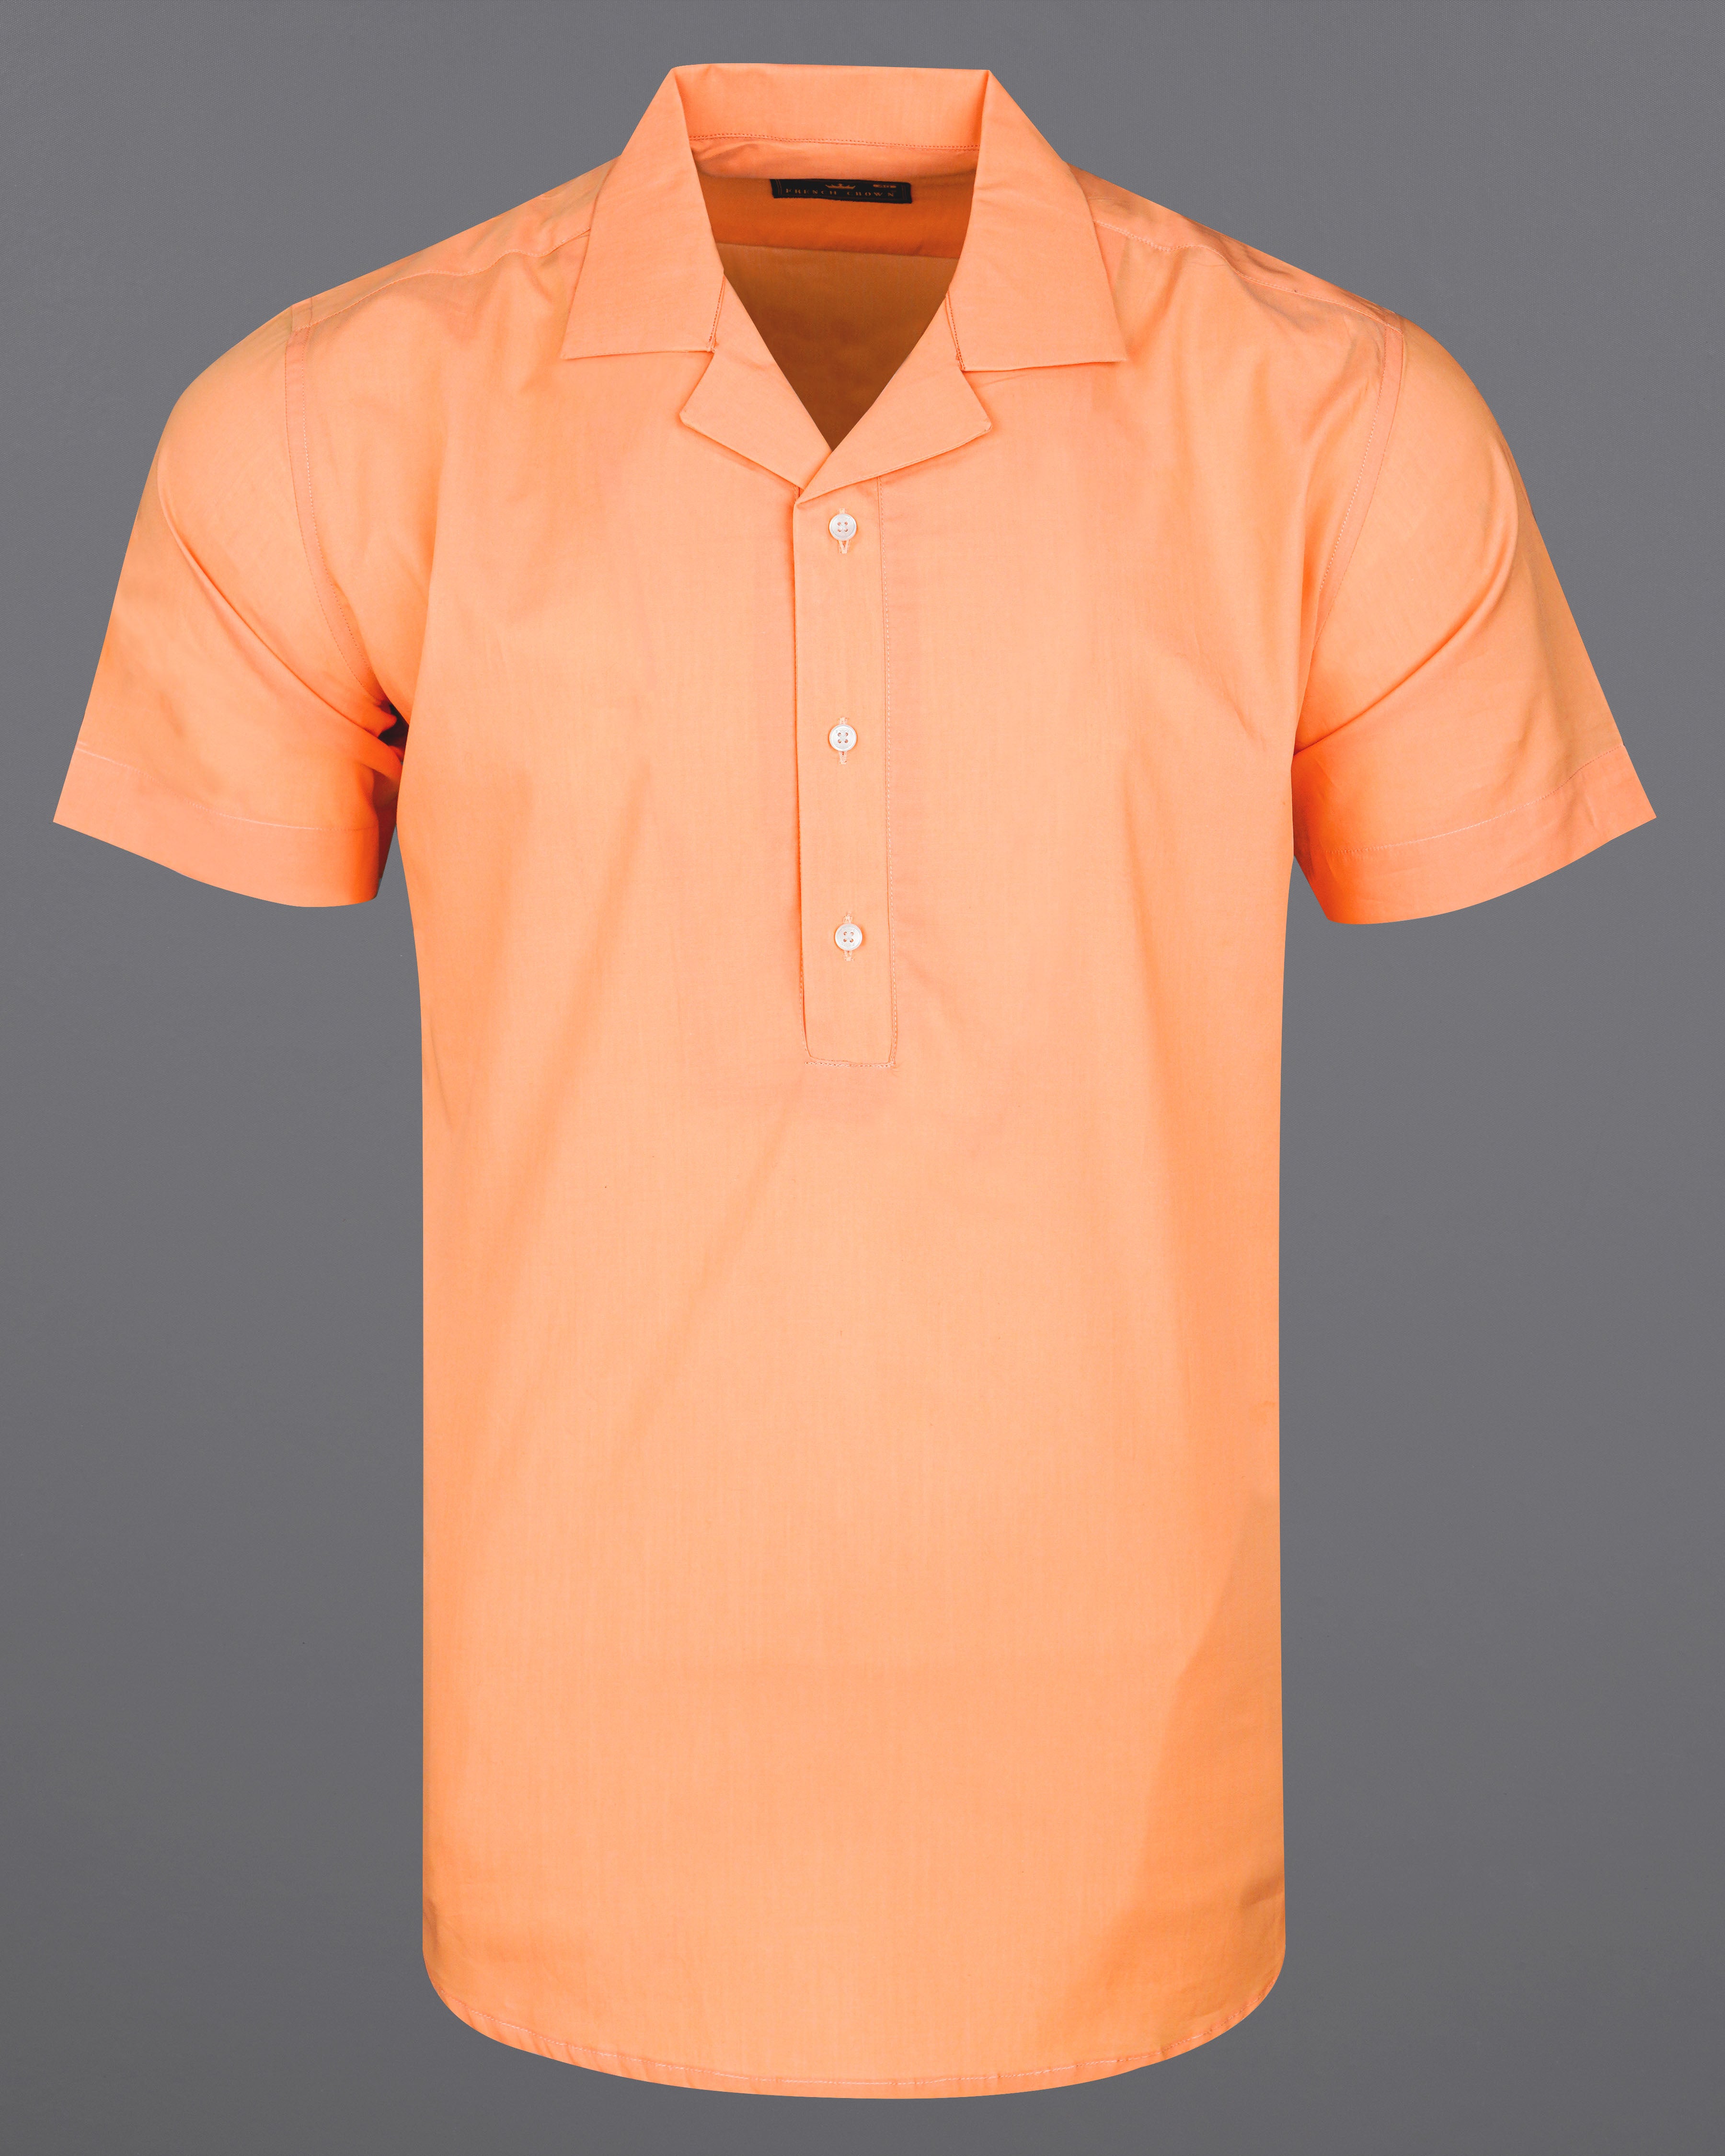 Tacao Orange Premium Cotton Designer Shirt  8549-CC-P299-38,8549-CC-P299-H-38,8549-CC-P299-39,8549-CC-P299-H-39,8549-CC-P299-40,8549-CC-P299-H-40,8549-CC-P299-42,8549-CC-P299-H-42,8549-CC-P299-44,8549-CC-P299-H-44,8549-CC-P299-46,8549-CC-P299-H-46,8549-CC-P299-48,8549-CC-P299-H-48,8549-CC-P299-50,8549-CC-P299-H-50,8549-CC-P299-52,8549-CC-P299-H-52